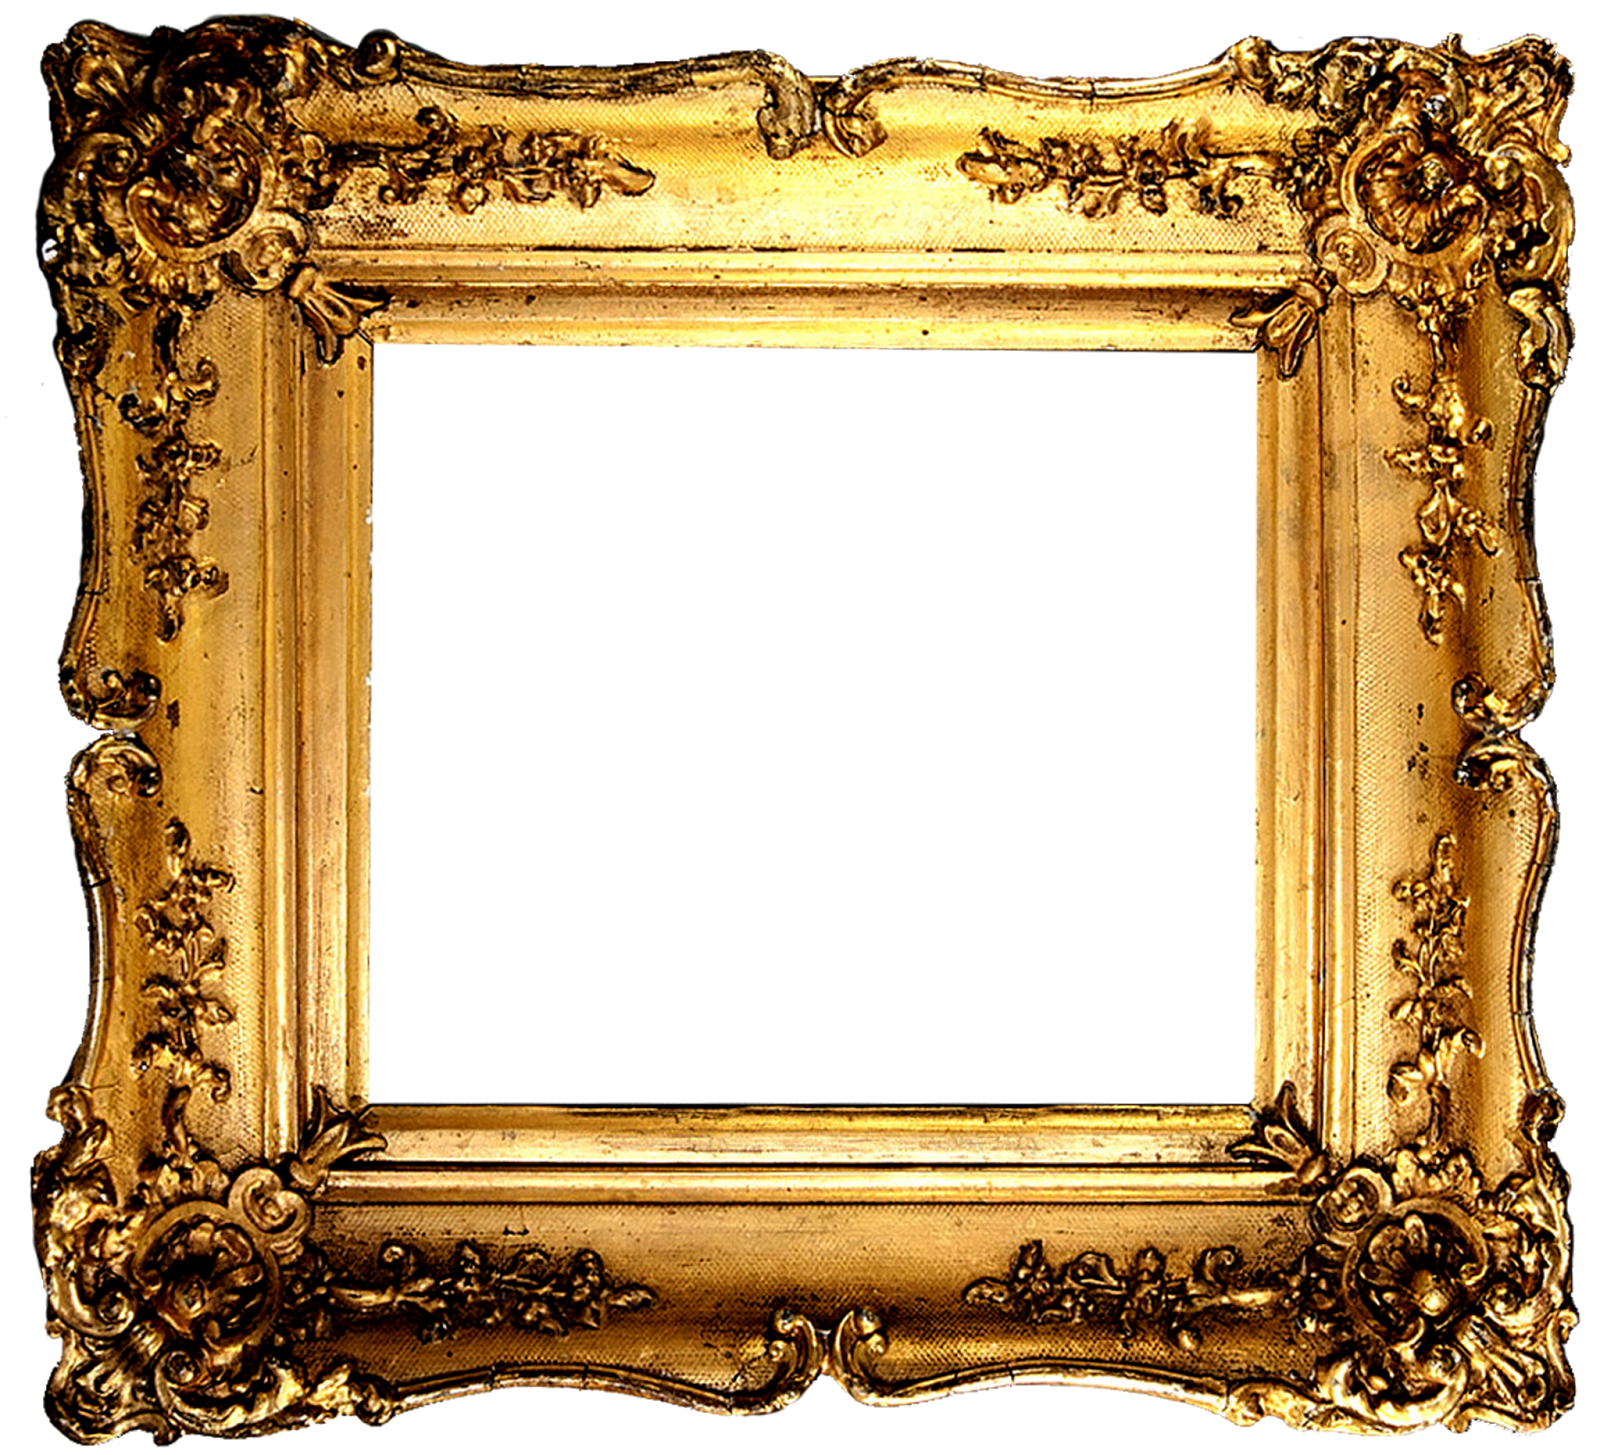 Download PNG image - Gold Antique Frame PNG Image 